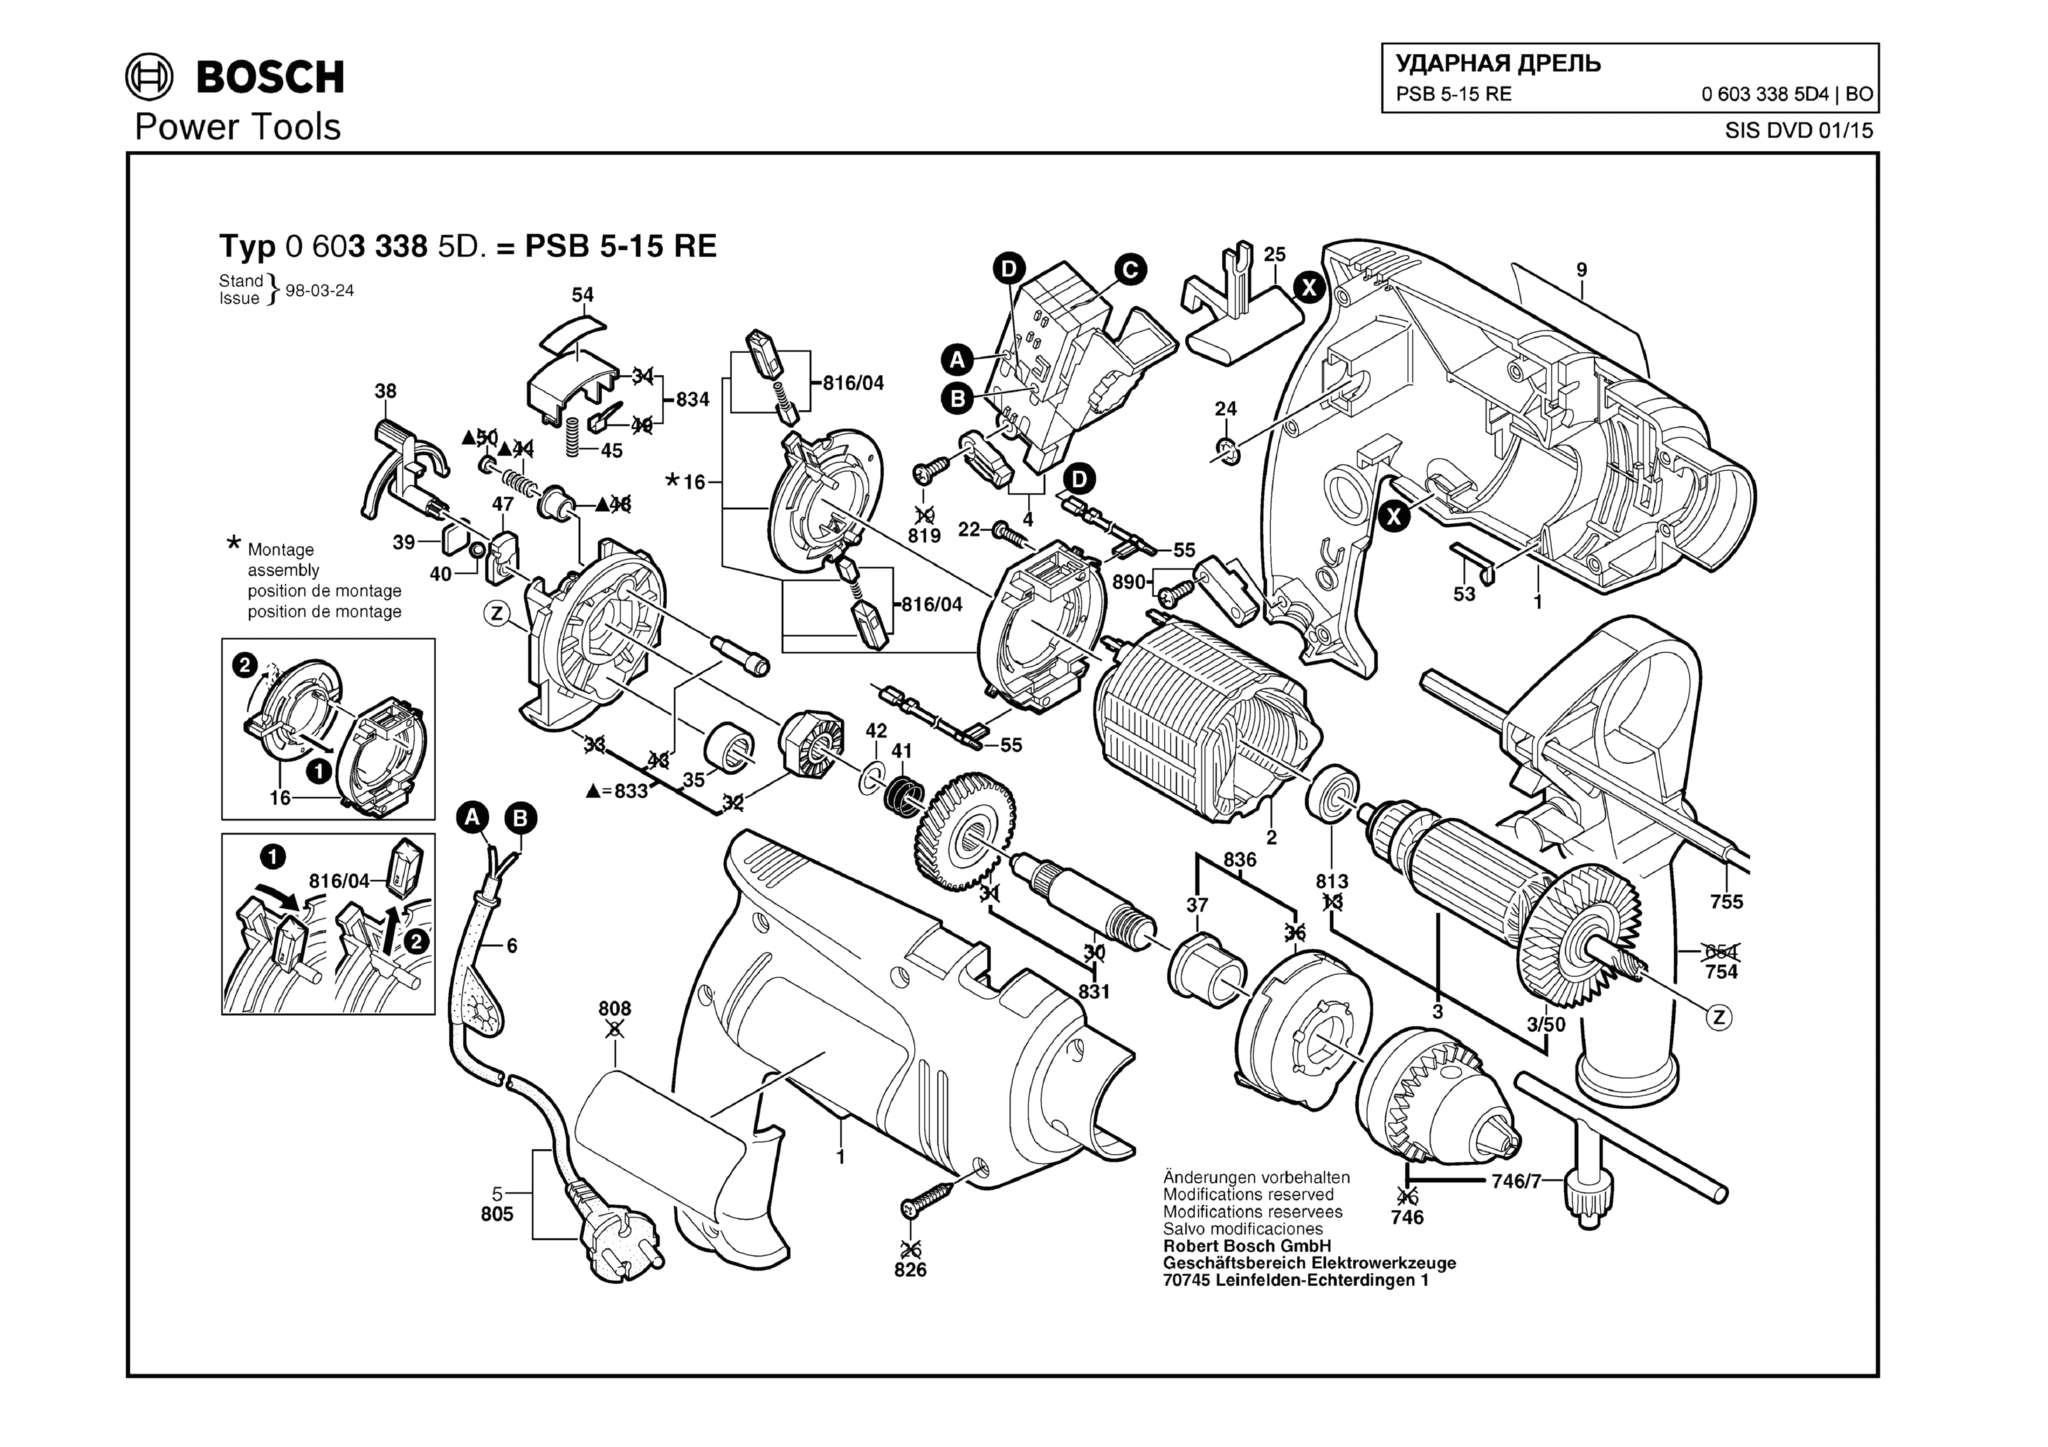 Запчасти, схема и деталировка Bosch PSB 5-15 RE (ТИП 06033385D4)